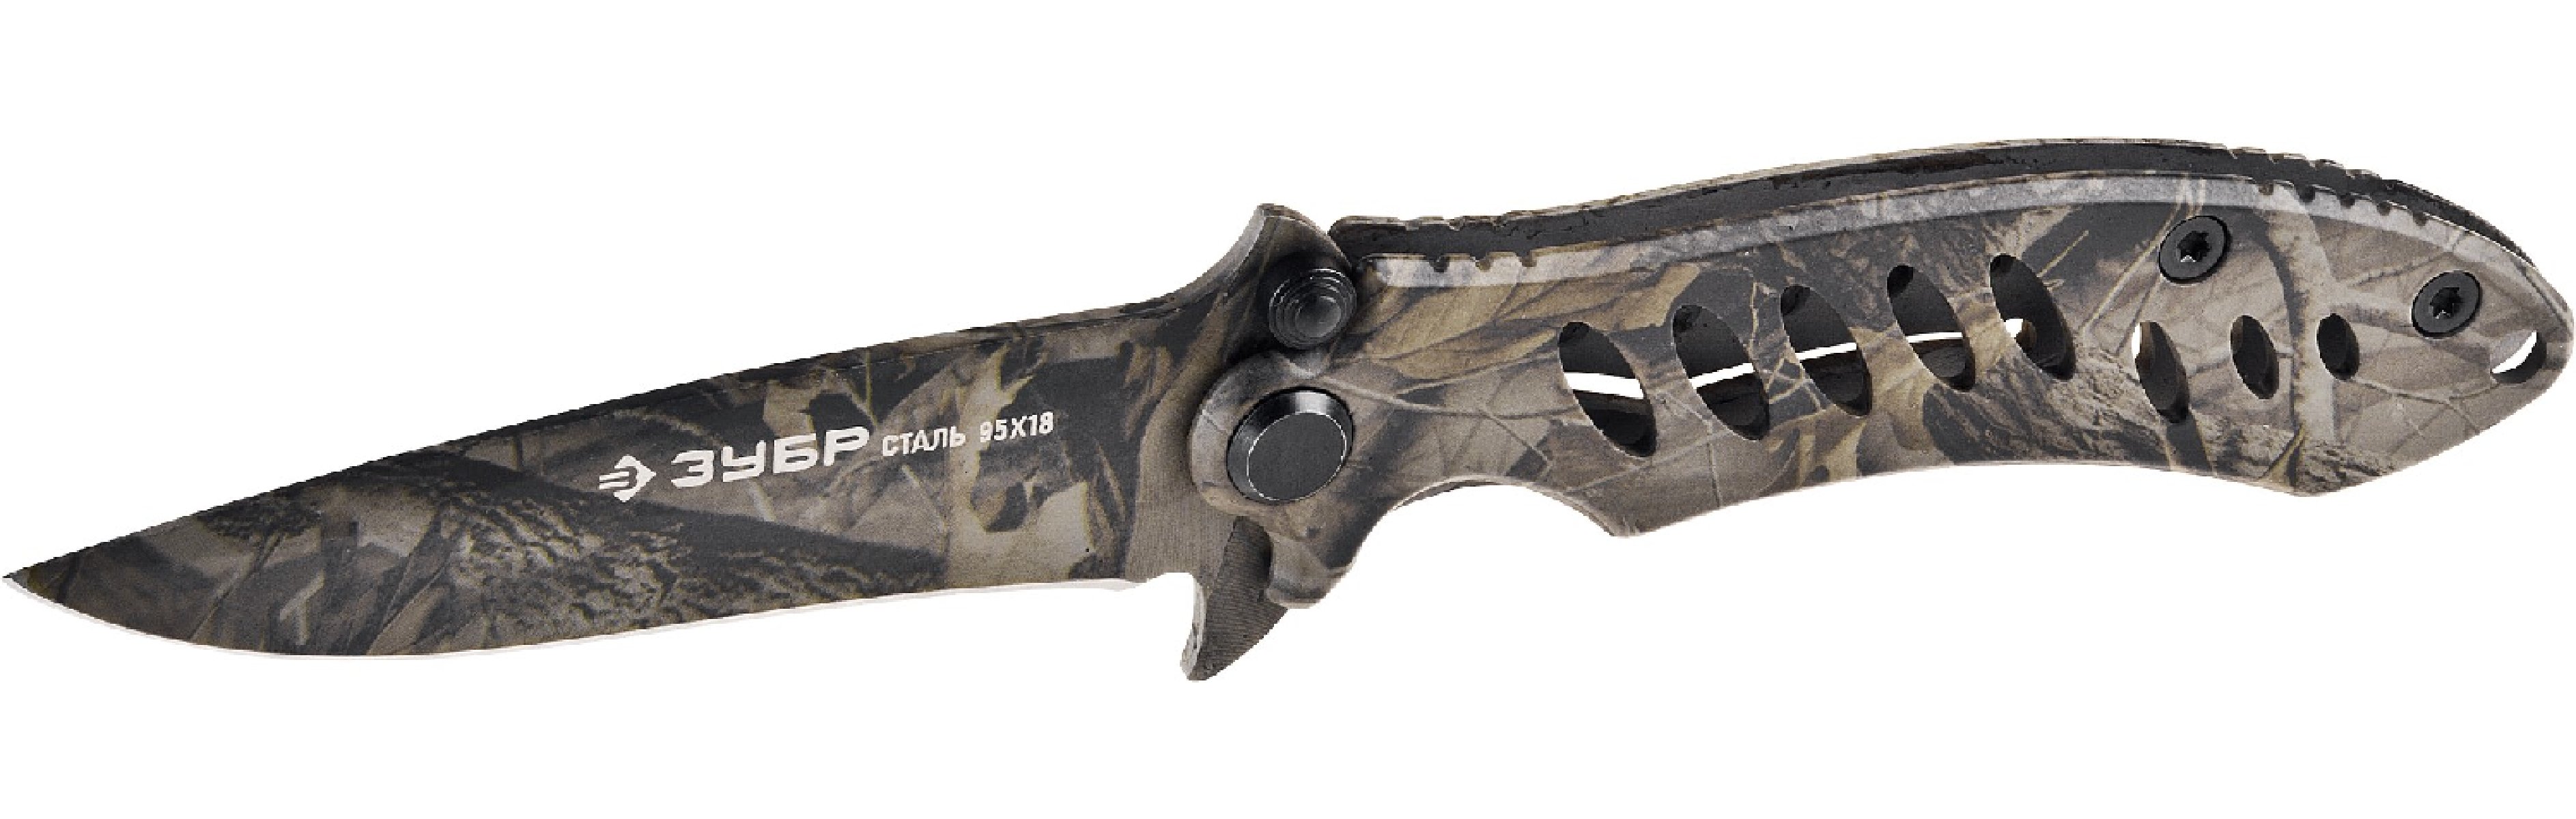 Складной нож ЗУБР Охотник 205 мм лезвие 90 мм цельнометаллический (47702_z01)Купить